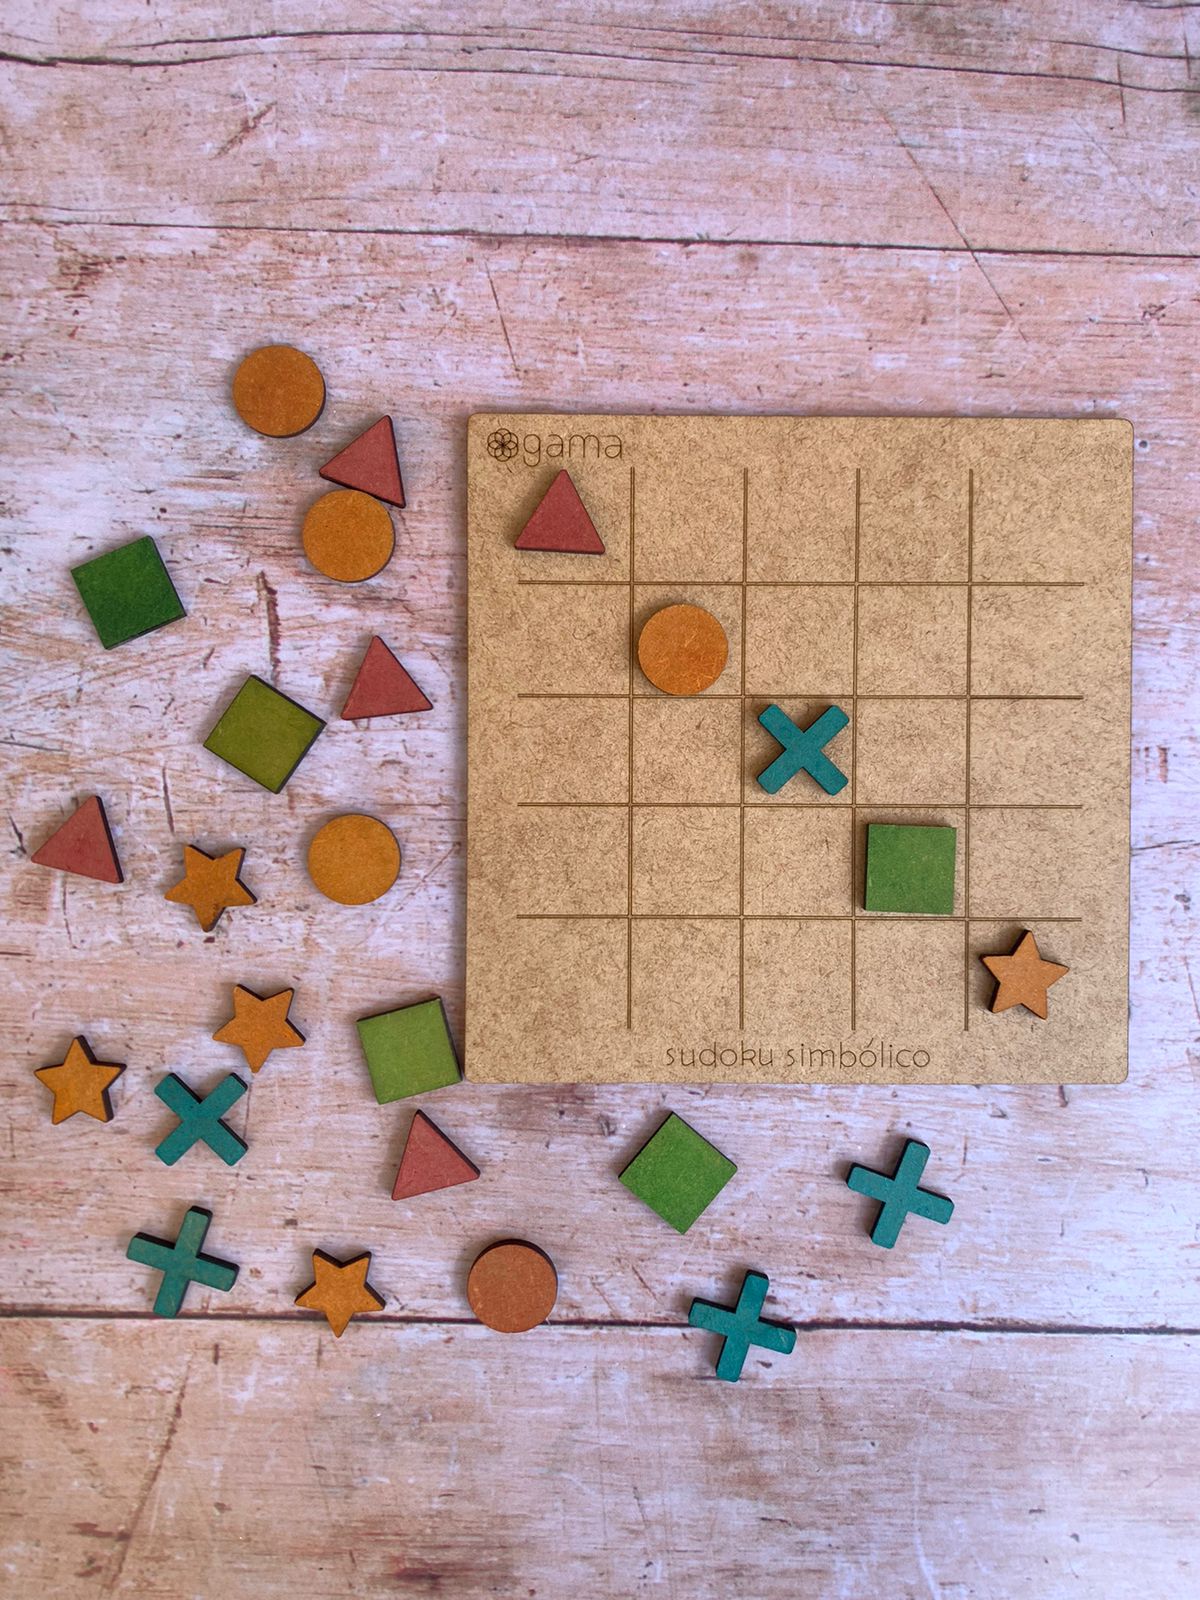 Mini Jogo Sudoku - Jogo de Desenvolvimento e Aprendizagem em